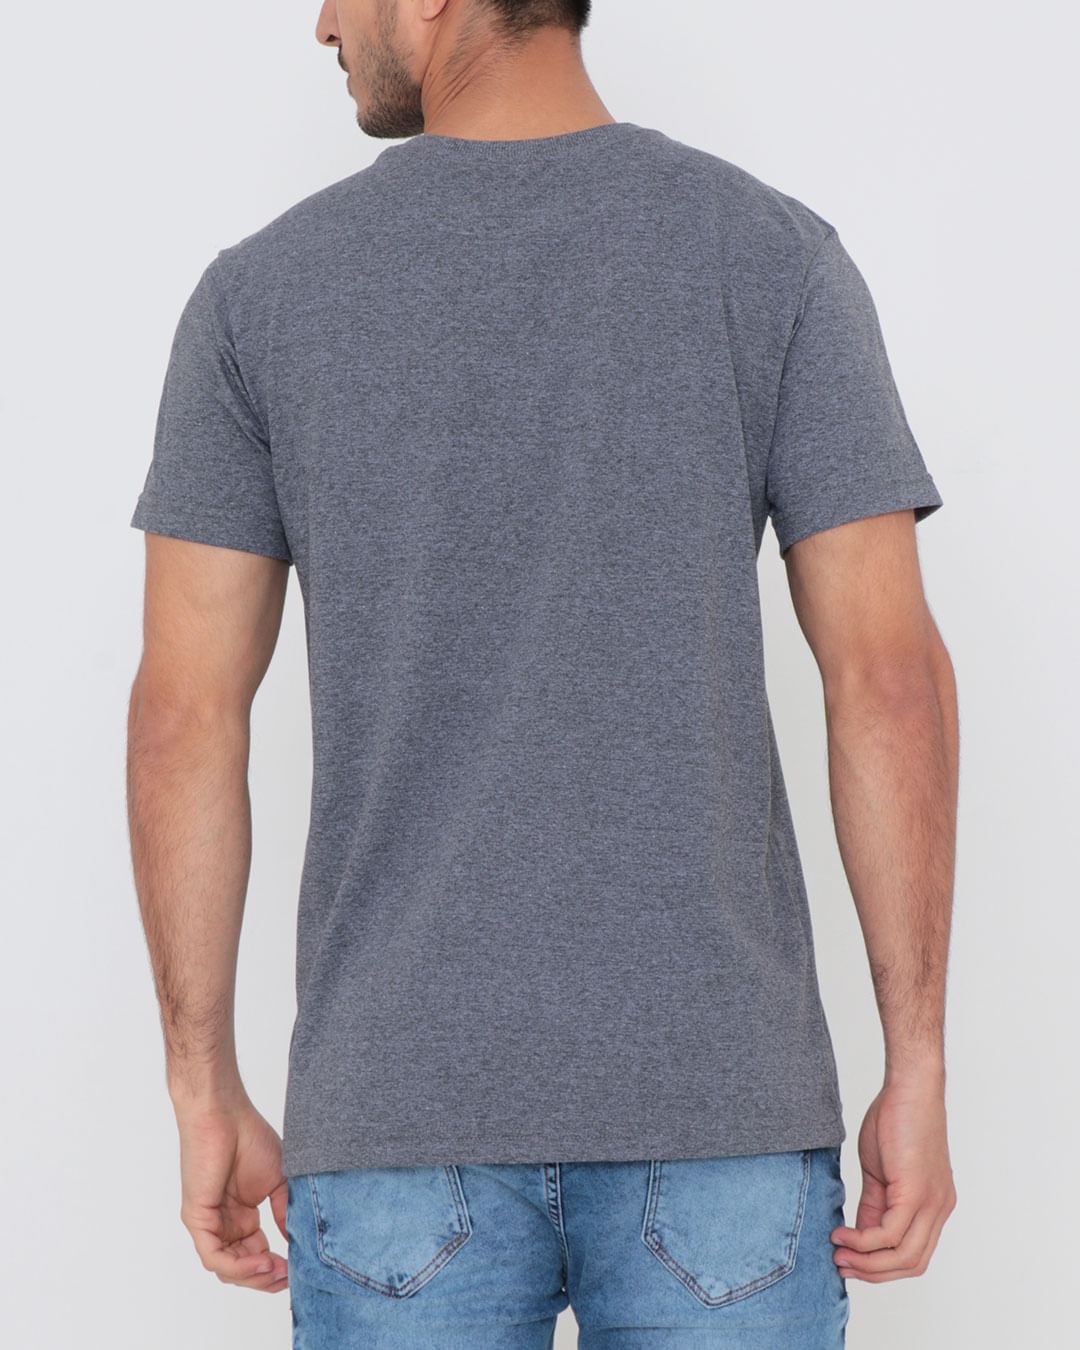 Camiseta-Estampa-Ecko-Cinza-Escuro